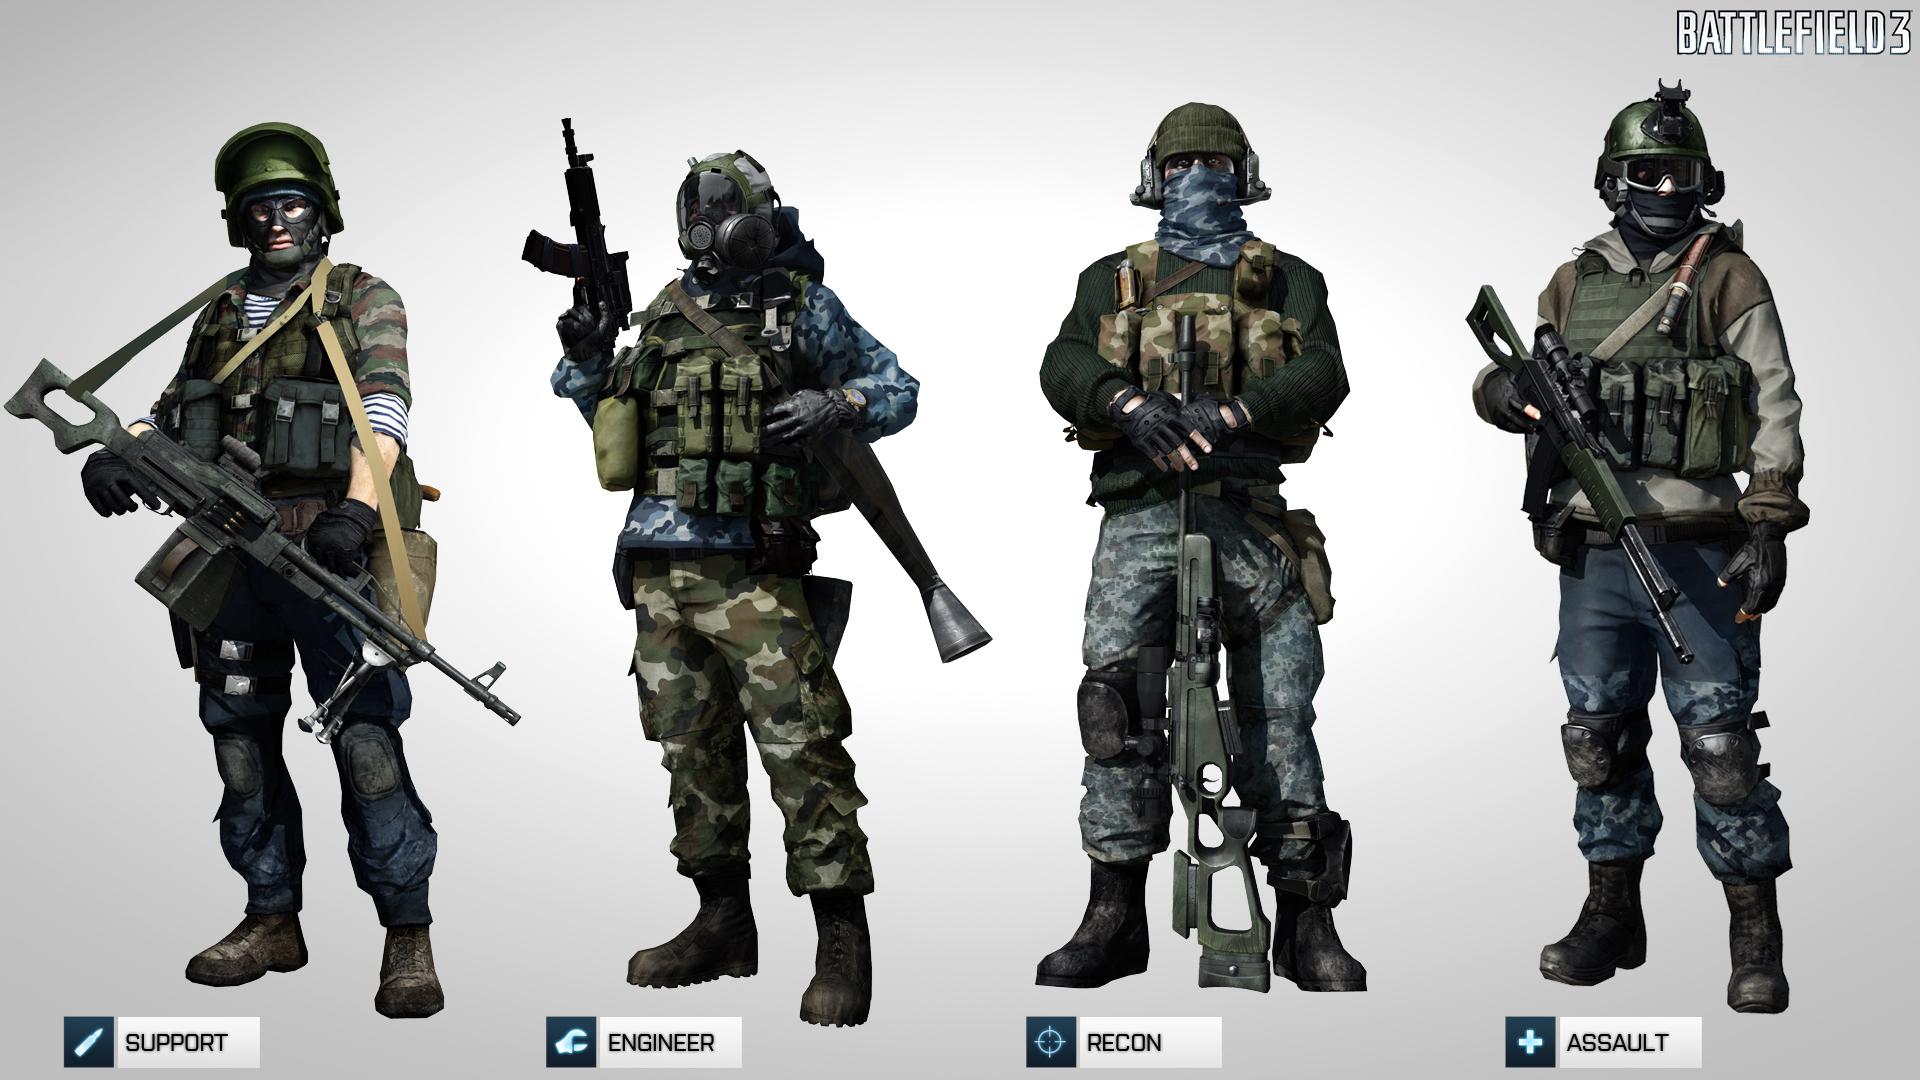 Fondos de Pantalla Battlefield Battlefield 3 Juegos descargar imagenes